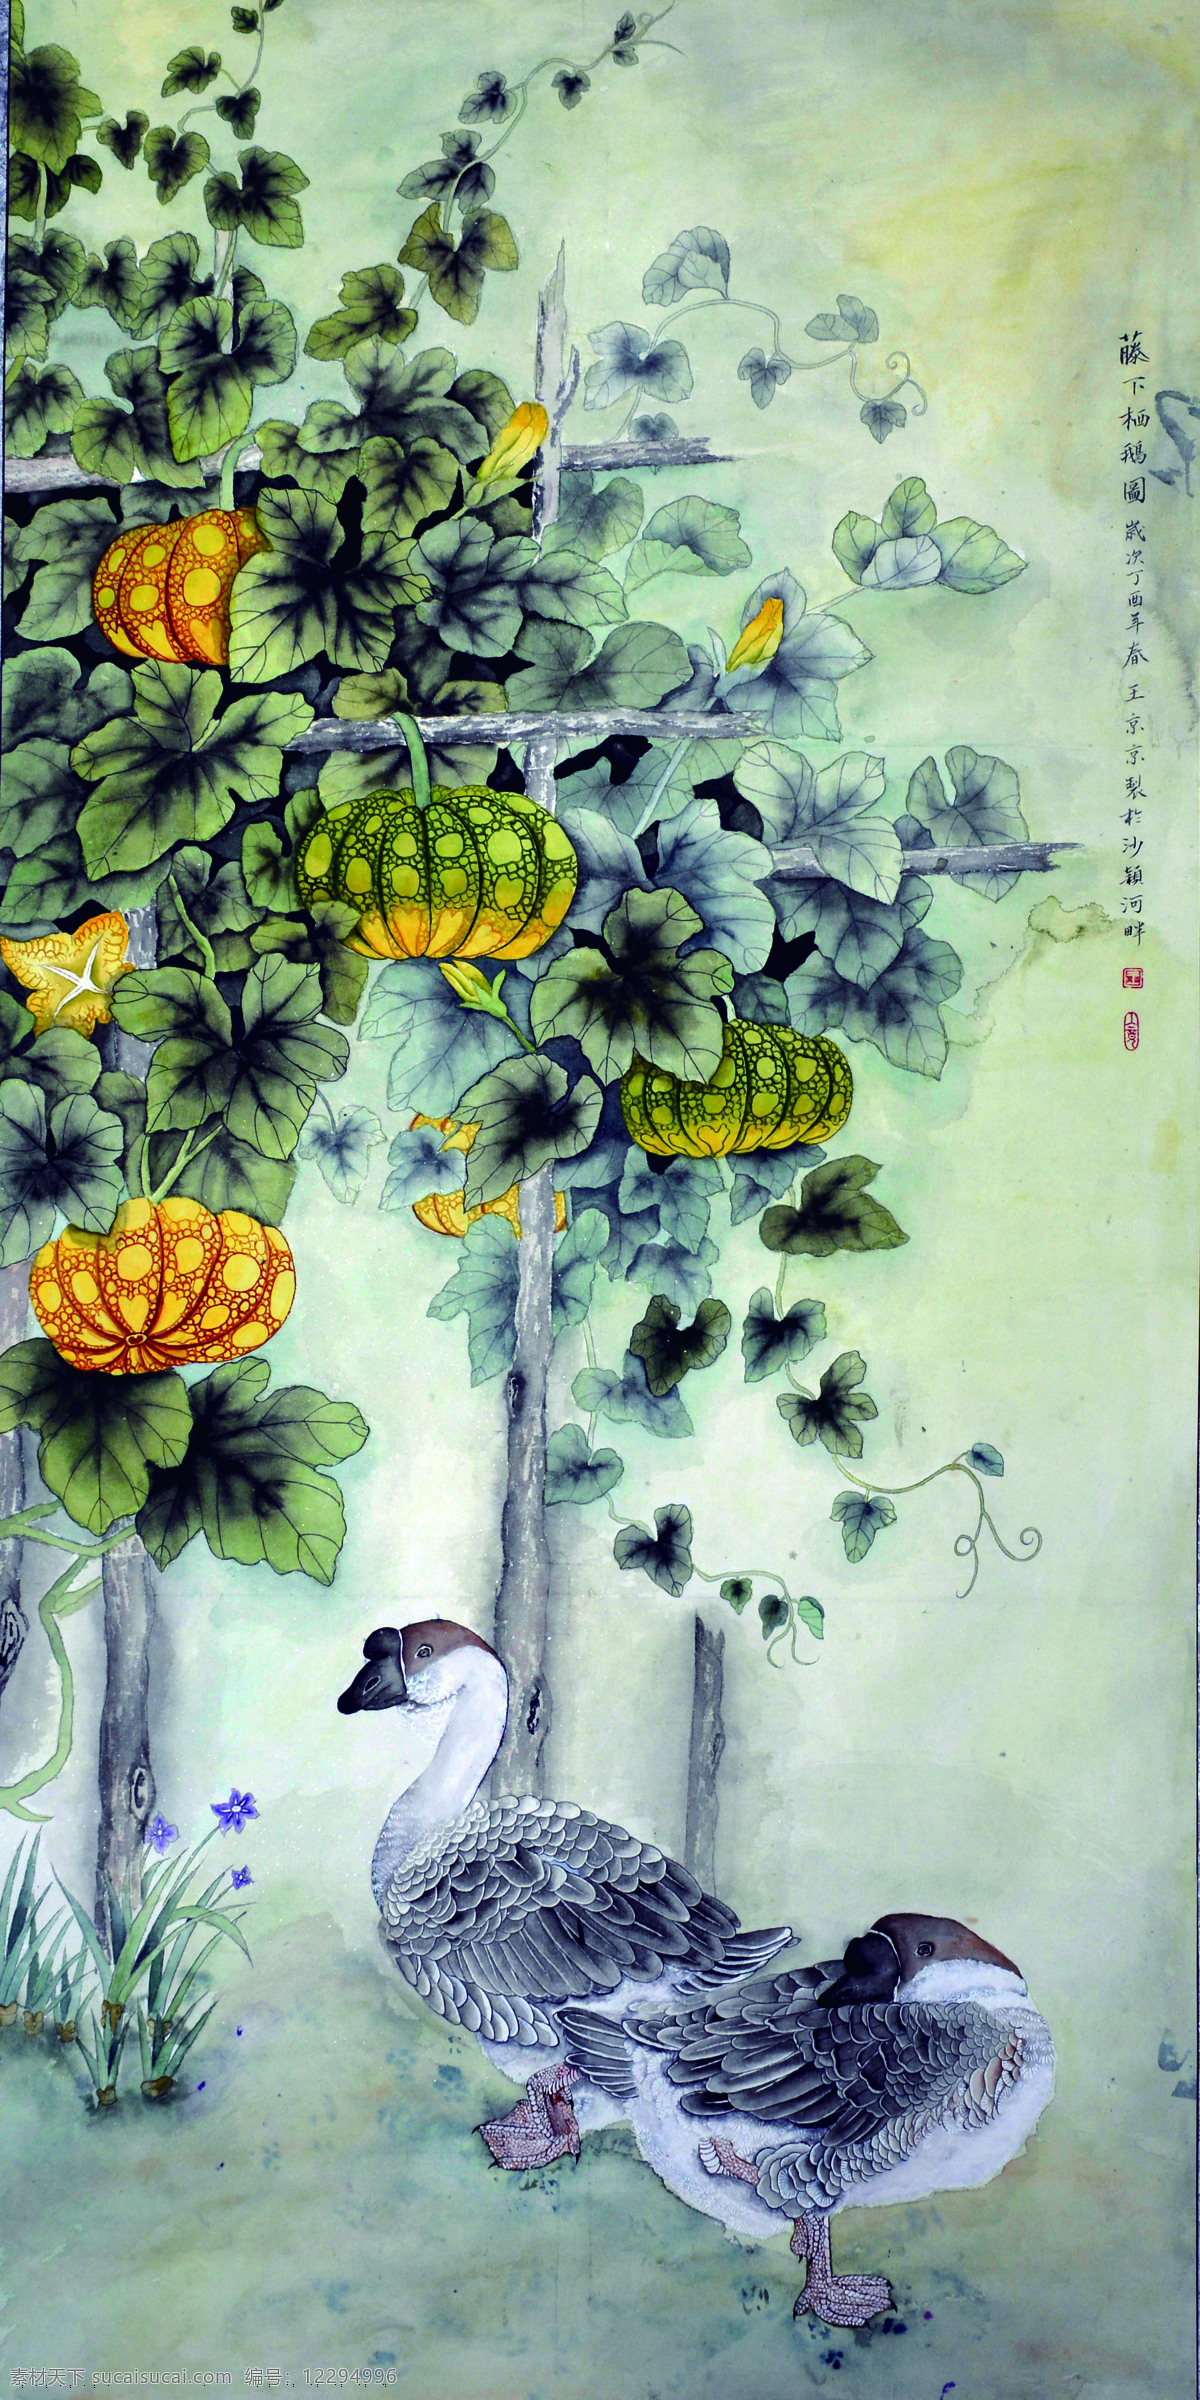 中国画 藤下栖鹅图 油画 美术学 艺术设计 文化艺术 绘画书法